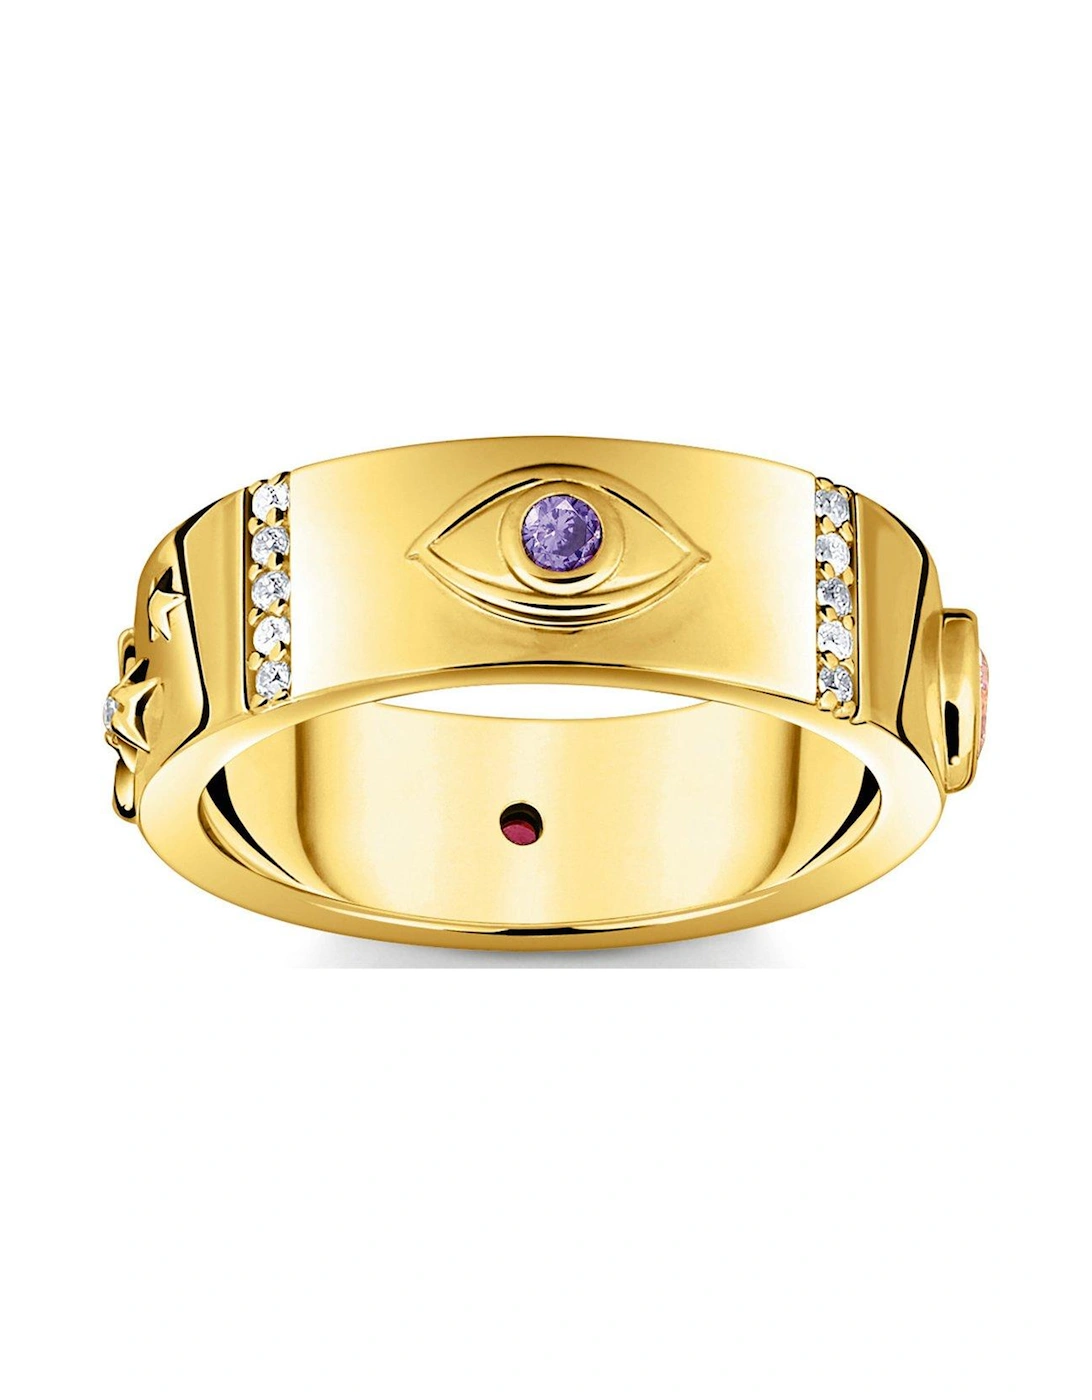 Cosmic Amulet Eye Ring, 2 of 1